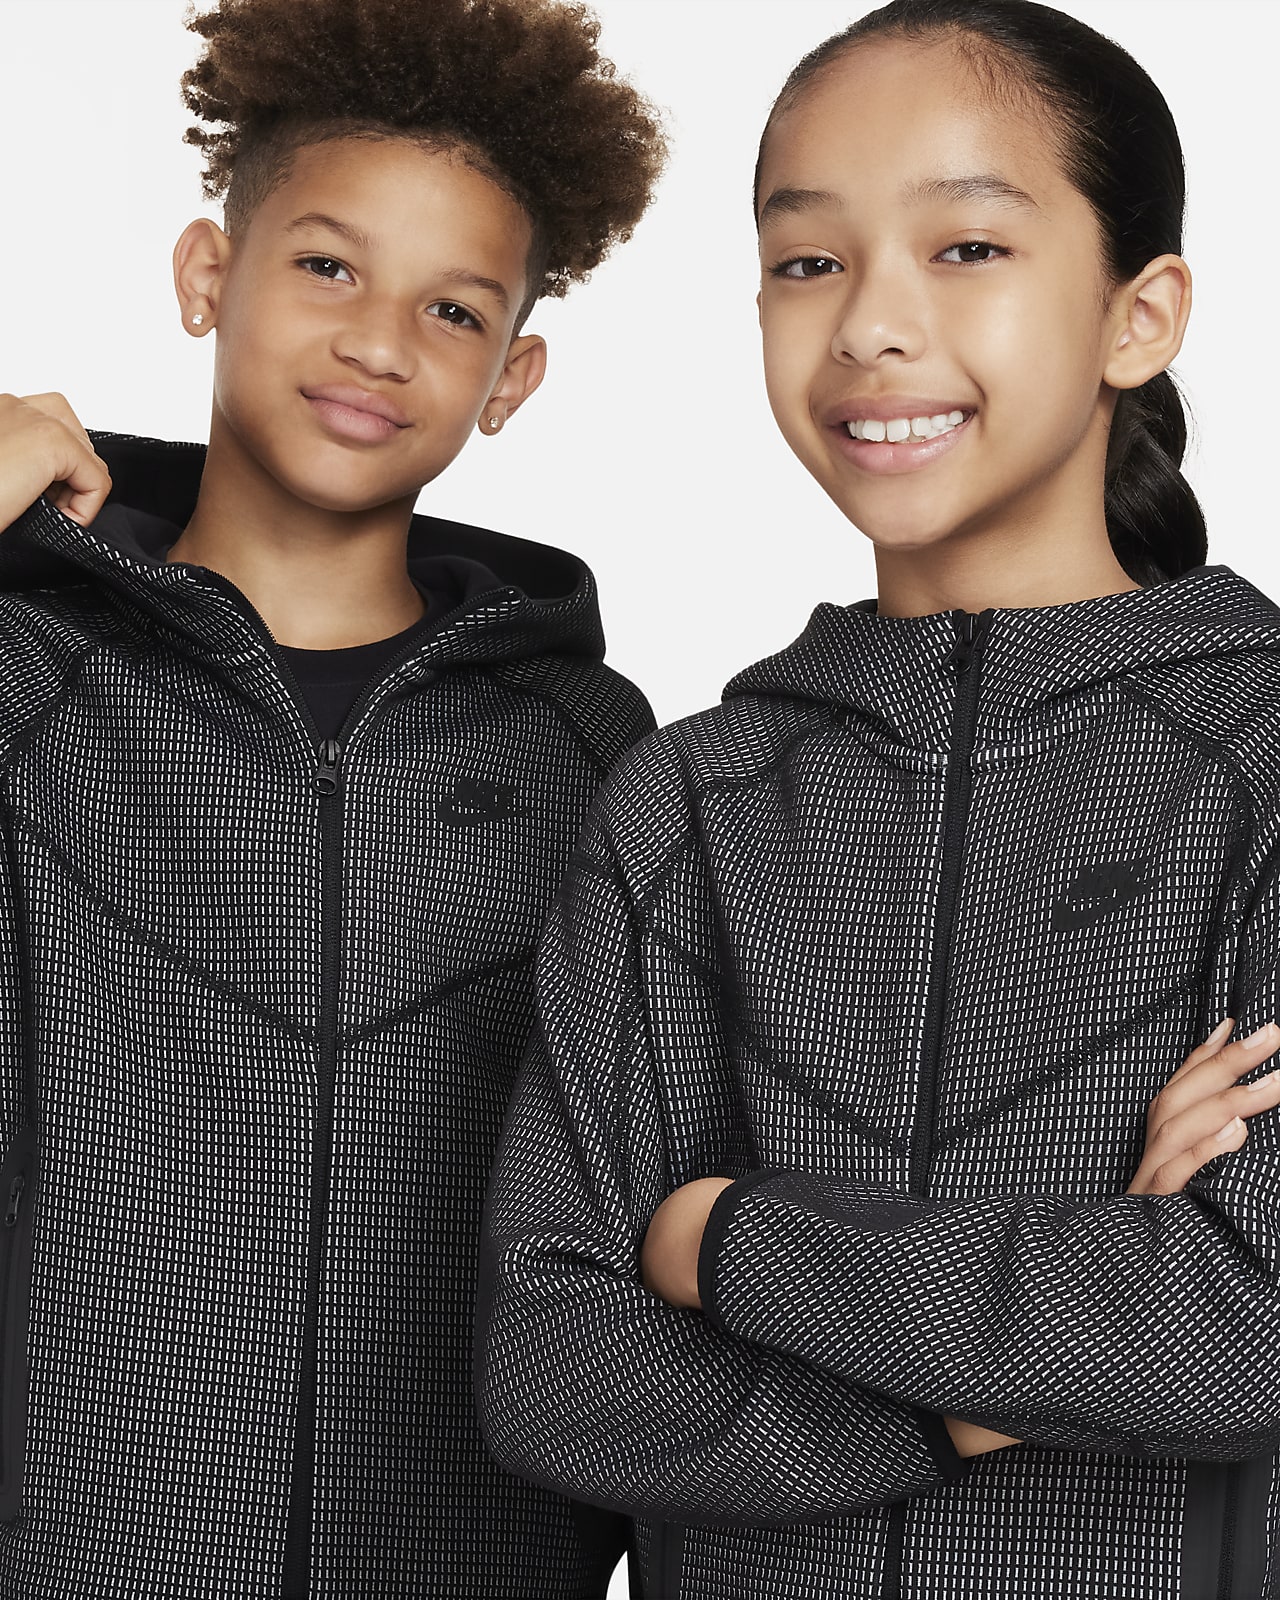 Nike Sportswear Older Kids' (Boys') Fleece Graphic Cargo Trousers. Nike CA